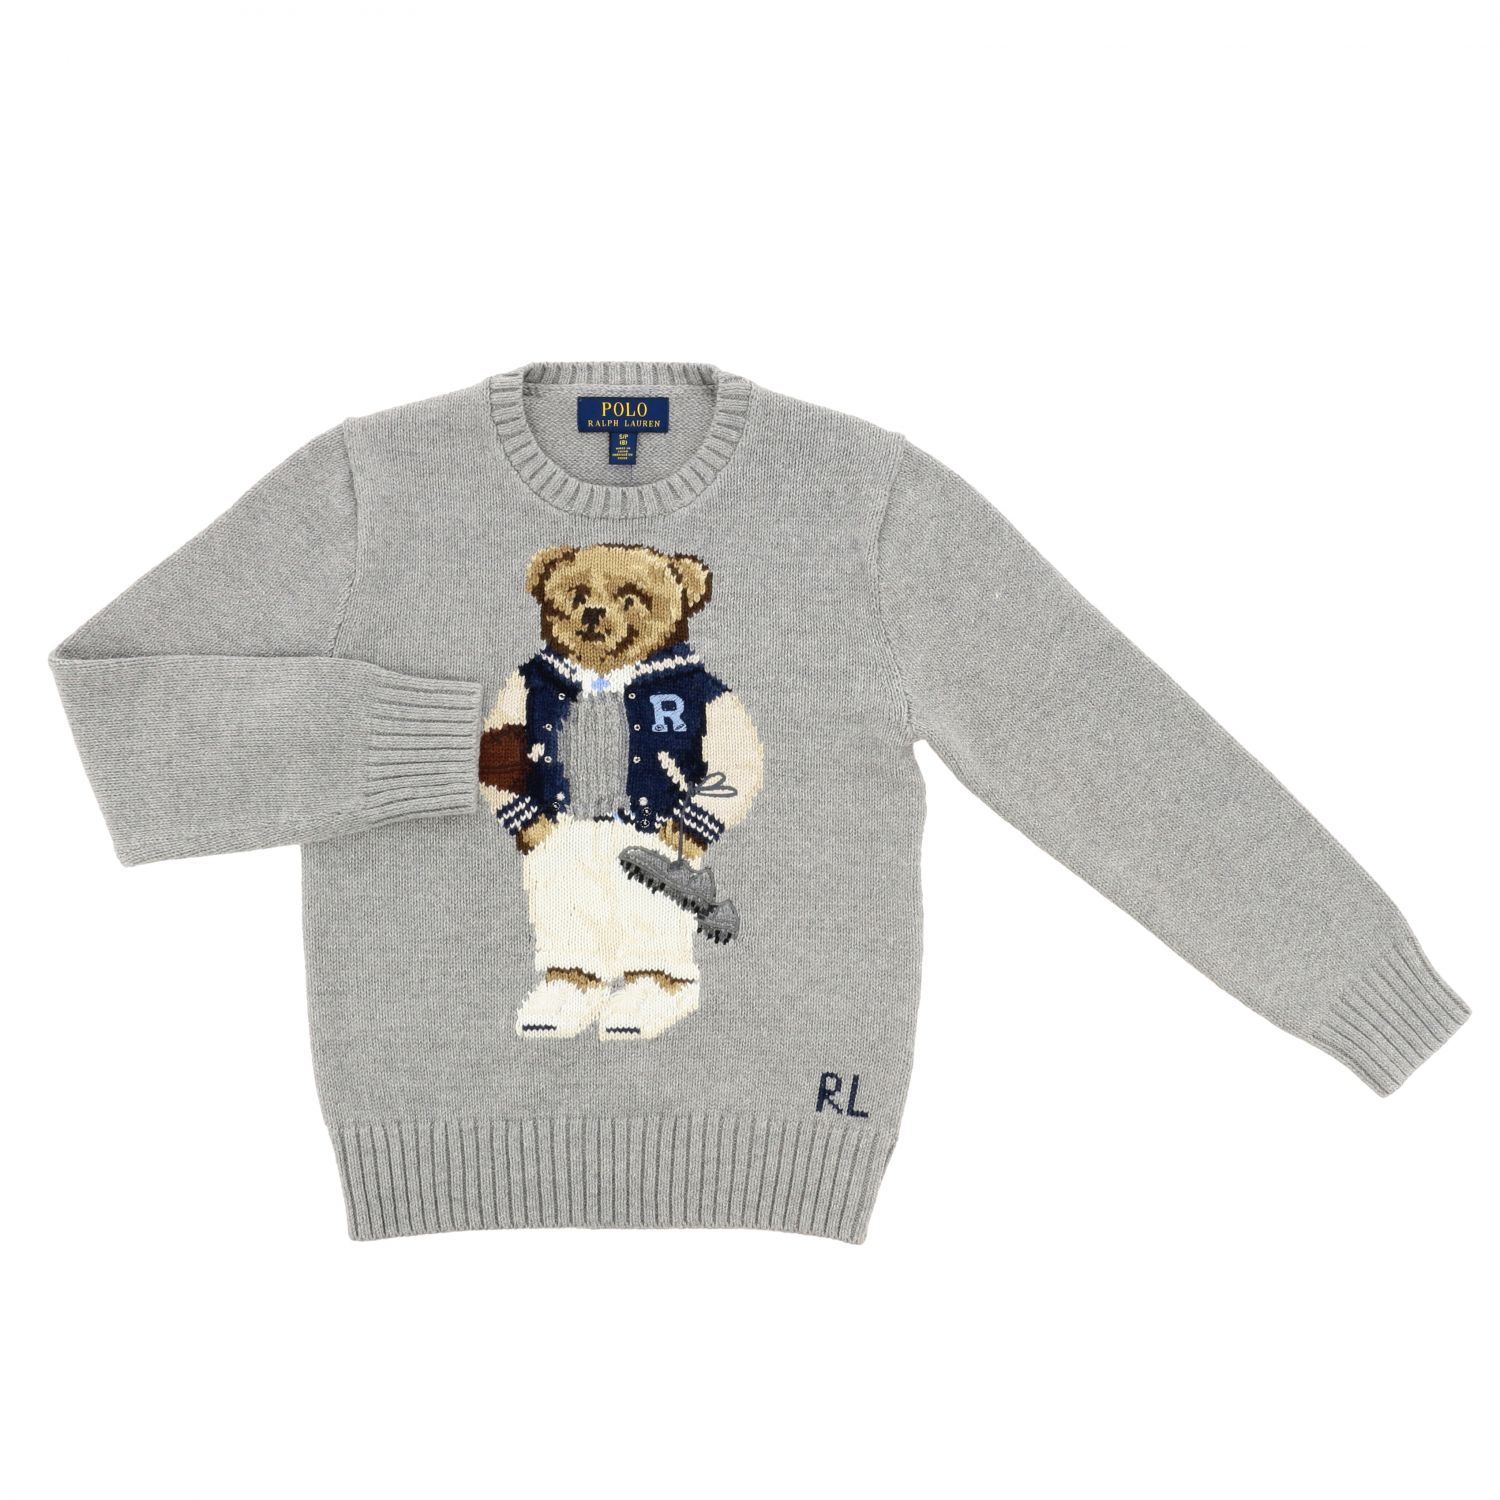 polo polar bear sweater